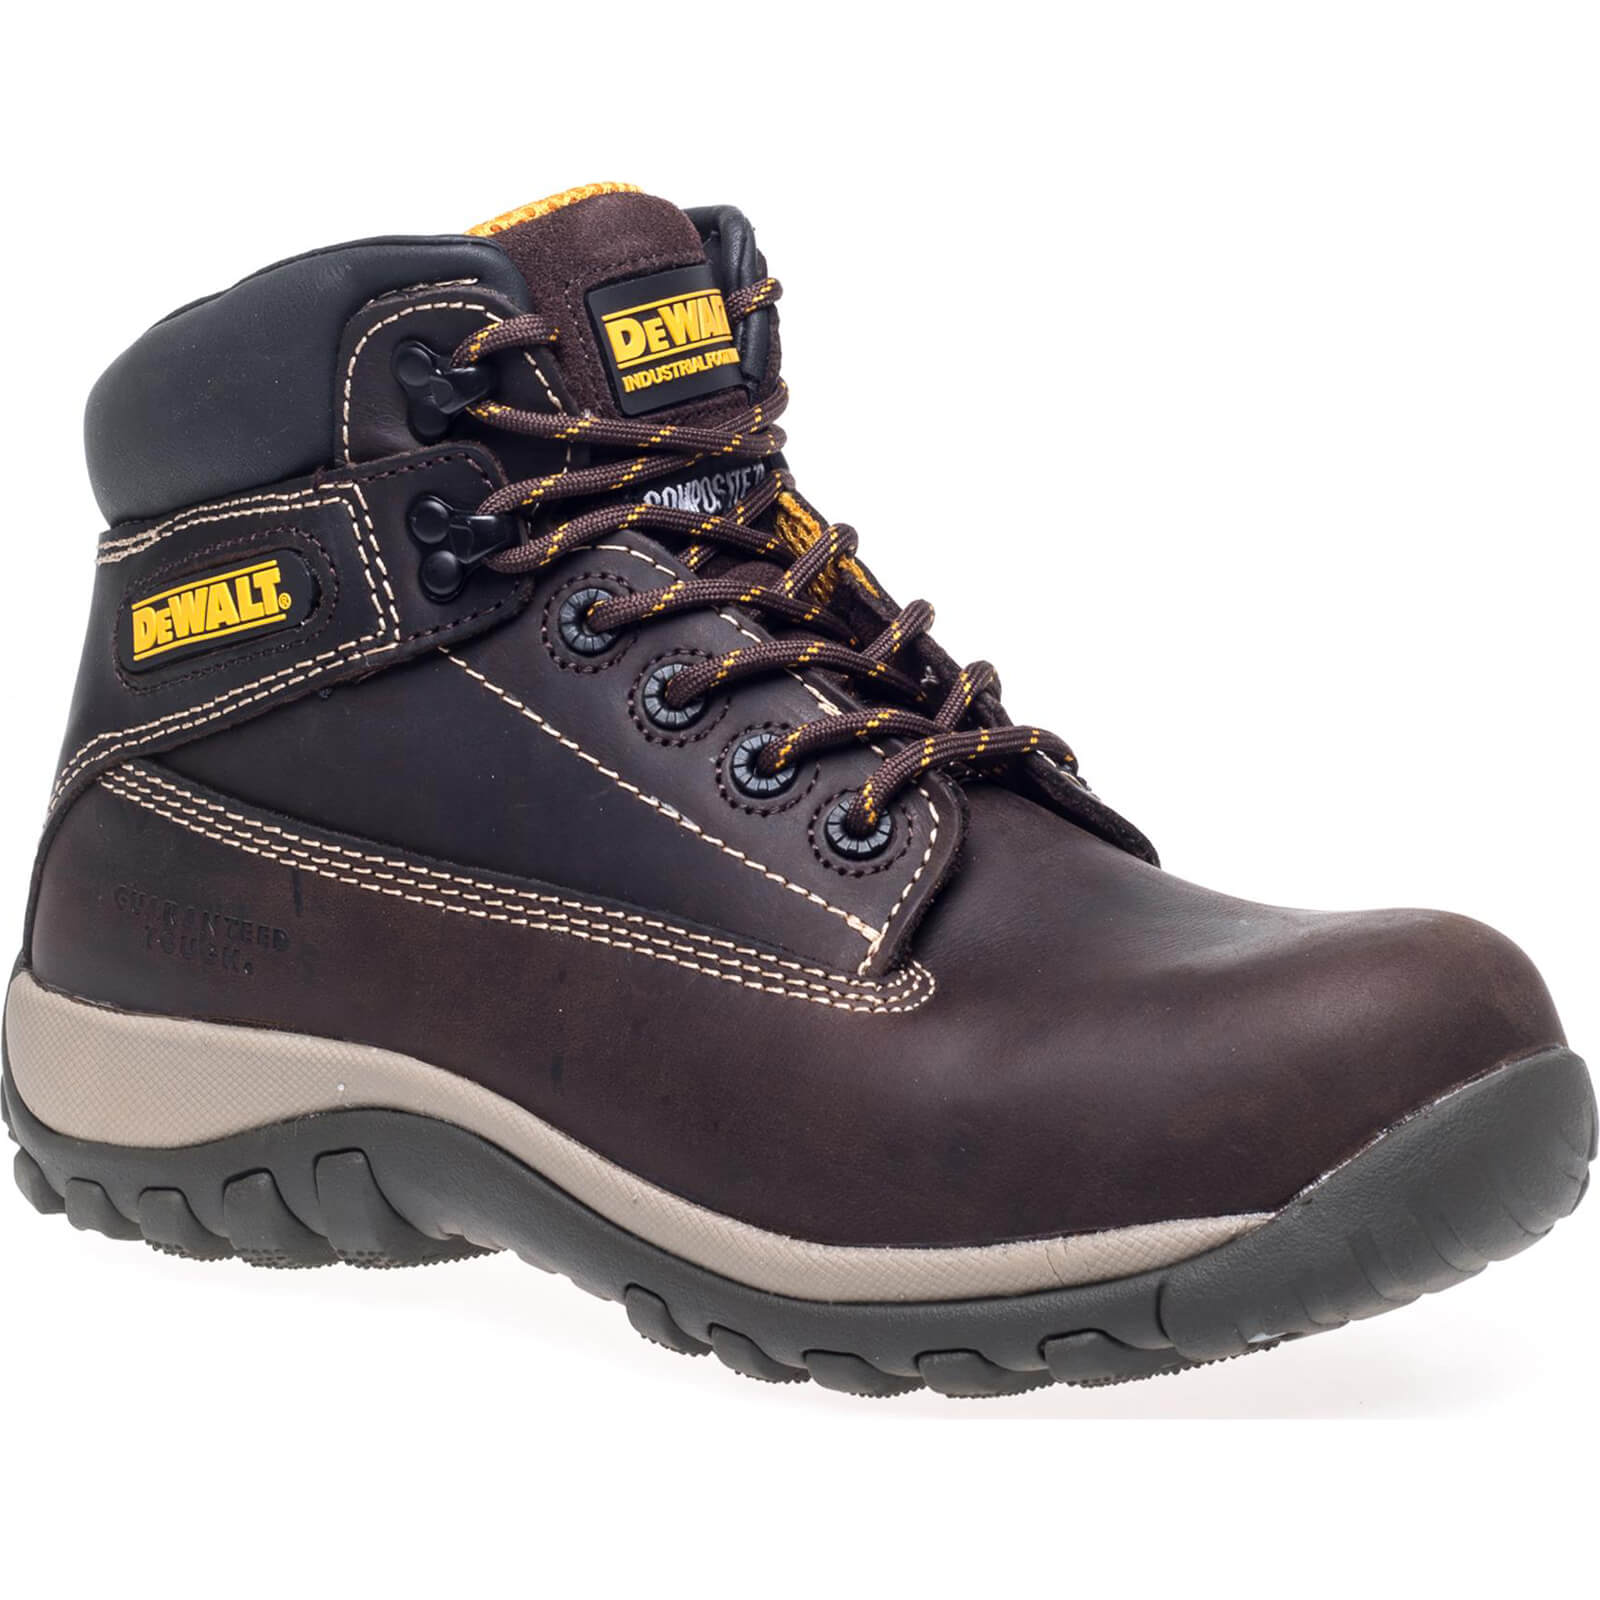 Photo of Dewalt Hammer Non Metallic Safety Boots Brown Size 12